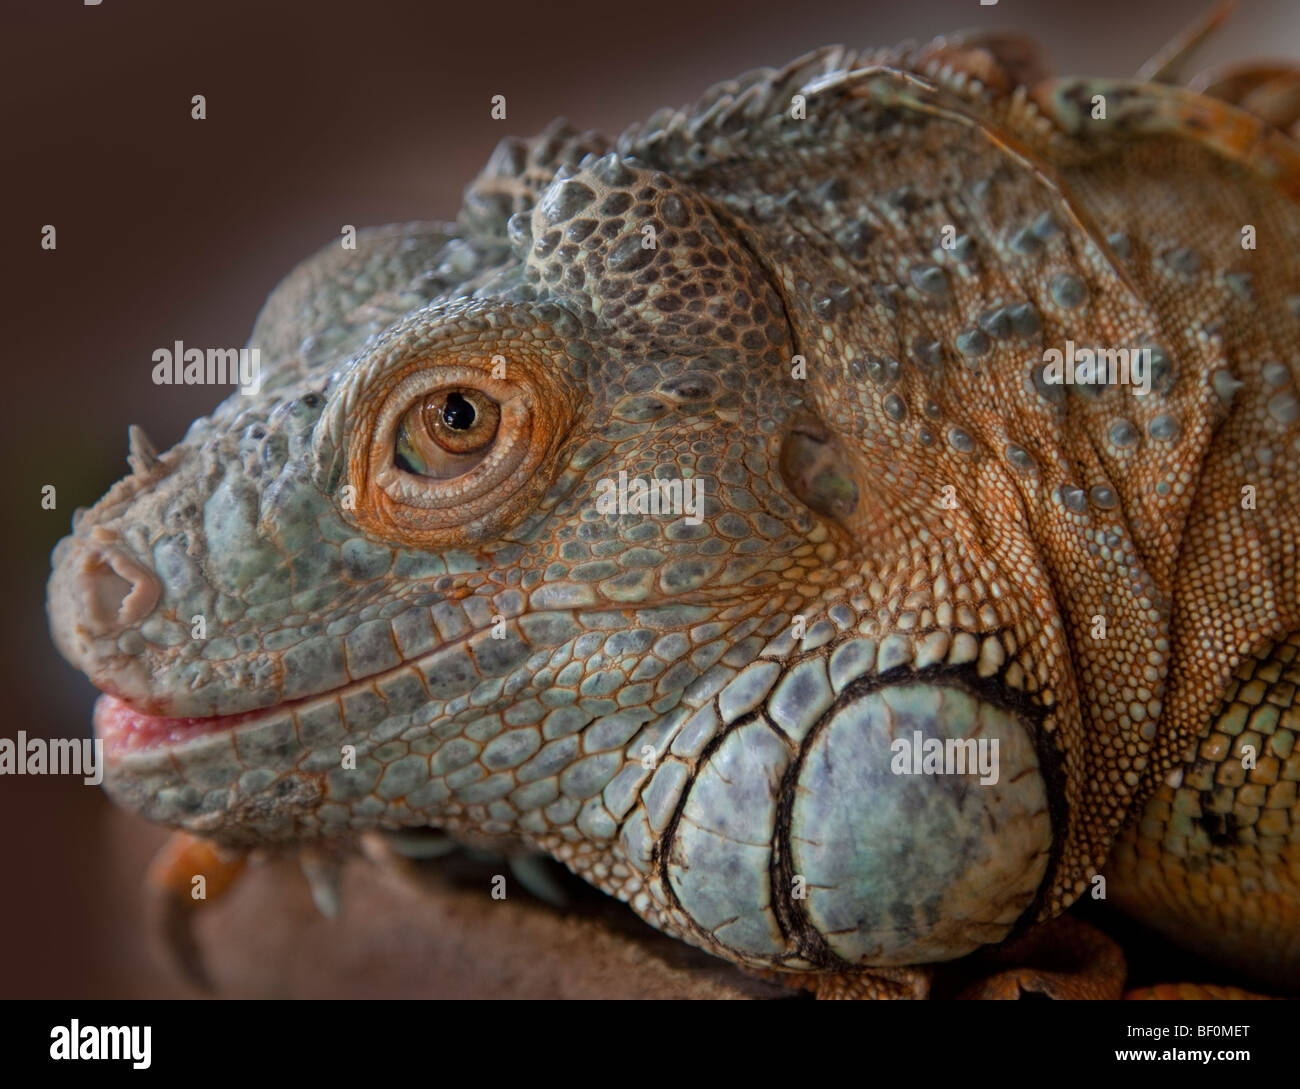 Iguana lucertola dettaglio della testa Foto Stock